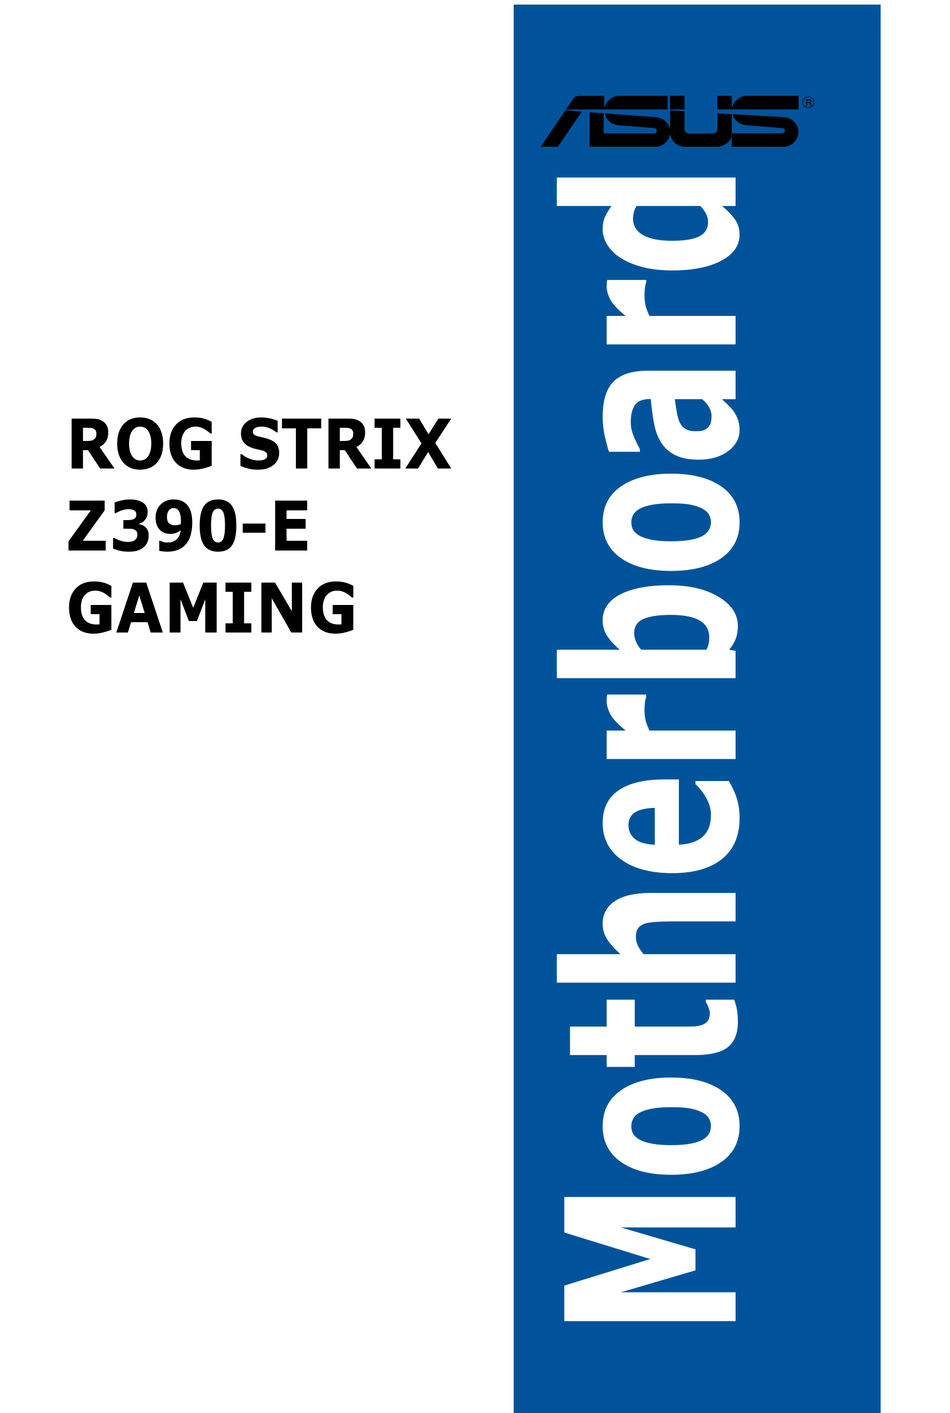 Asus Rog Strix Z390 E Gaming Manual Pdf Download Manualslib